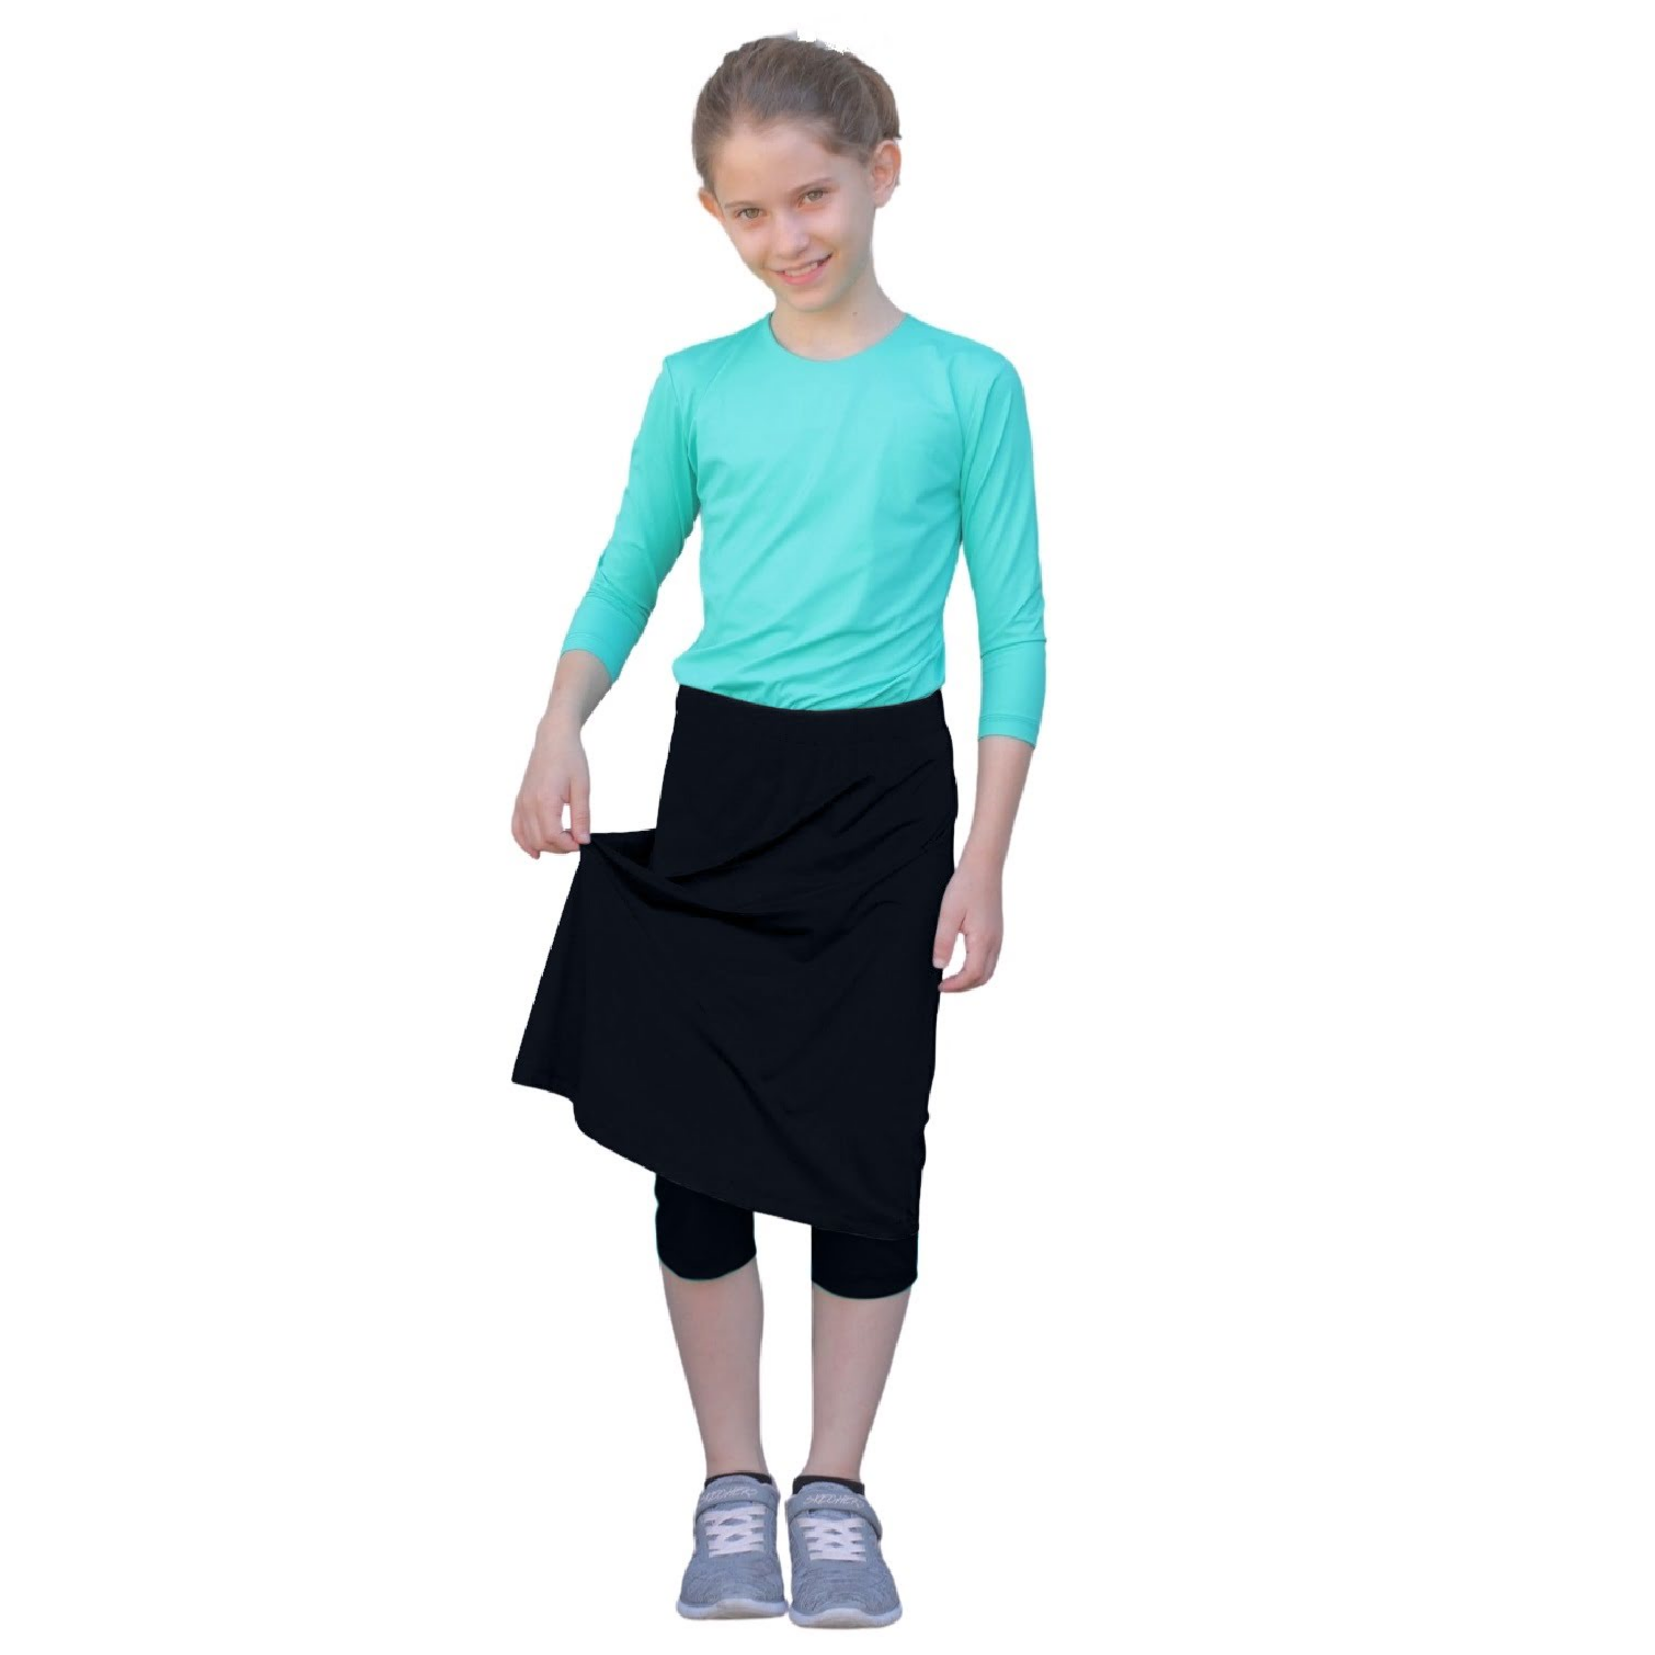 Spandex Skort - Skirt with Leggings for Running/Swimming/Exercise – Pack  for Camp